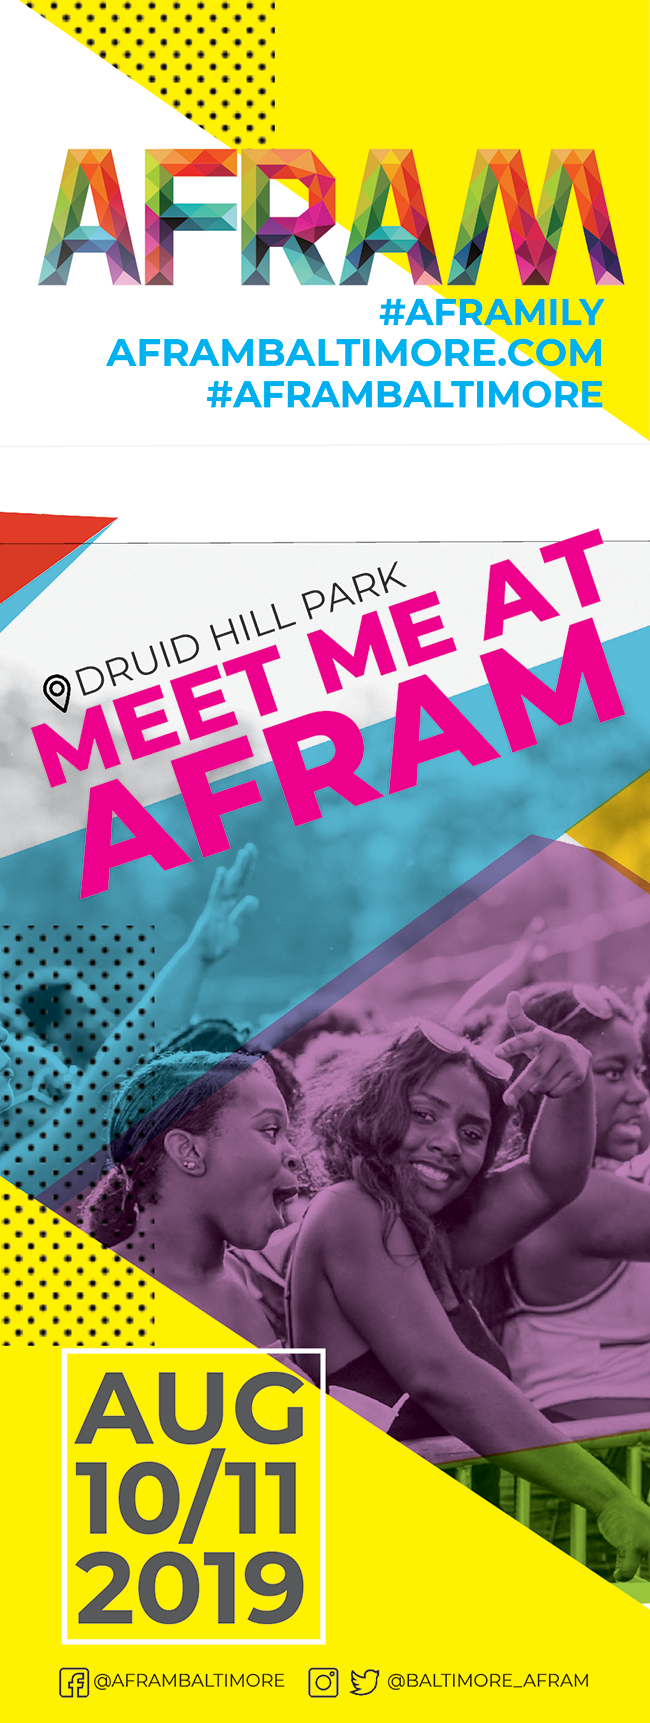 AFRAM festival, Aug 10-11 2019 @ Druid Hill Park